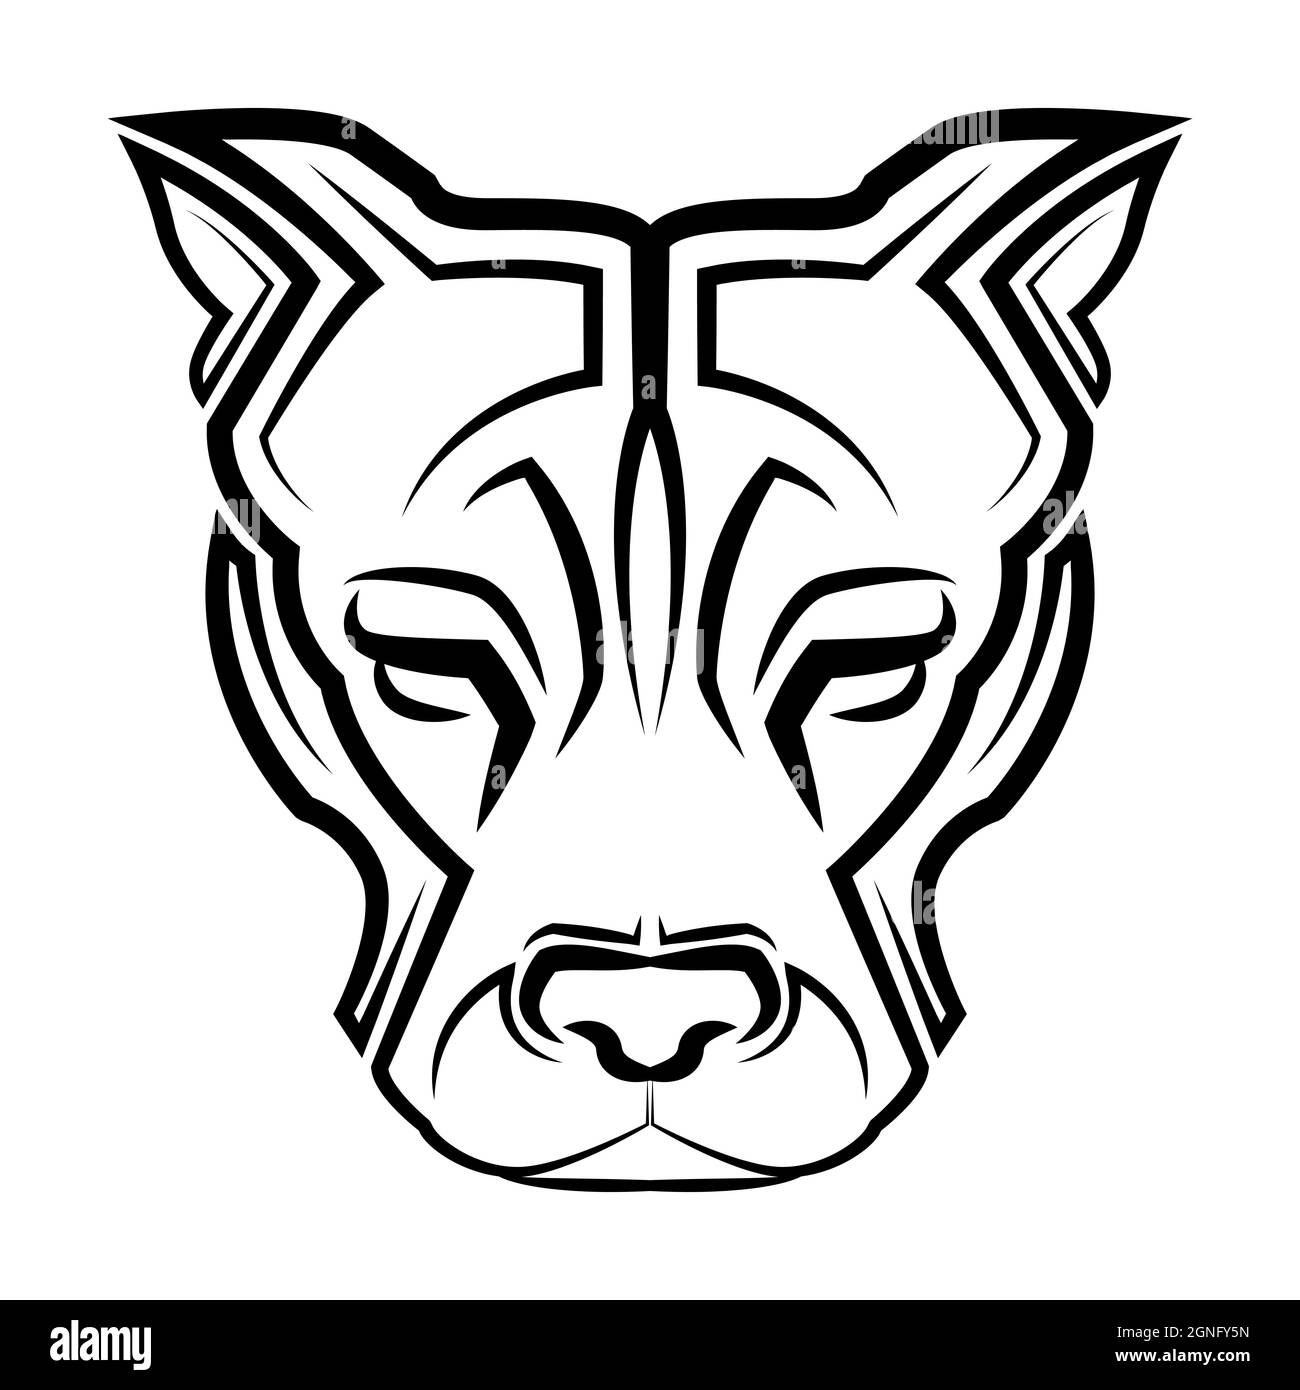 Illustration de la ligne noire et blanche de la tête de chien Pitbull. Bon usage pour symbole, mascotte, icône, avatar, tatouage, T-shirt, logo ou tout autre motif Illustration de Vecteur